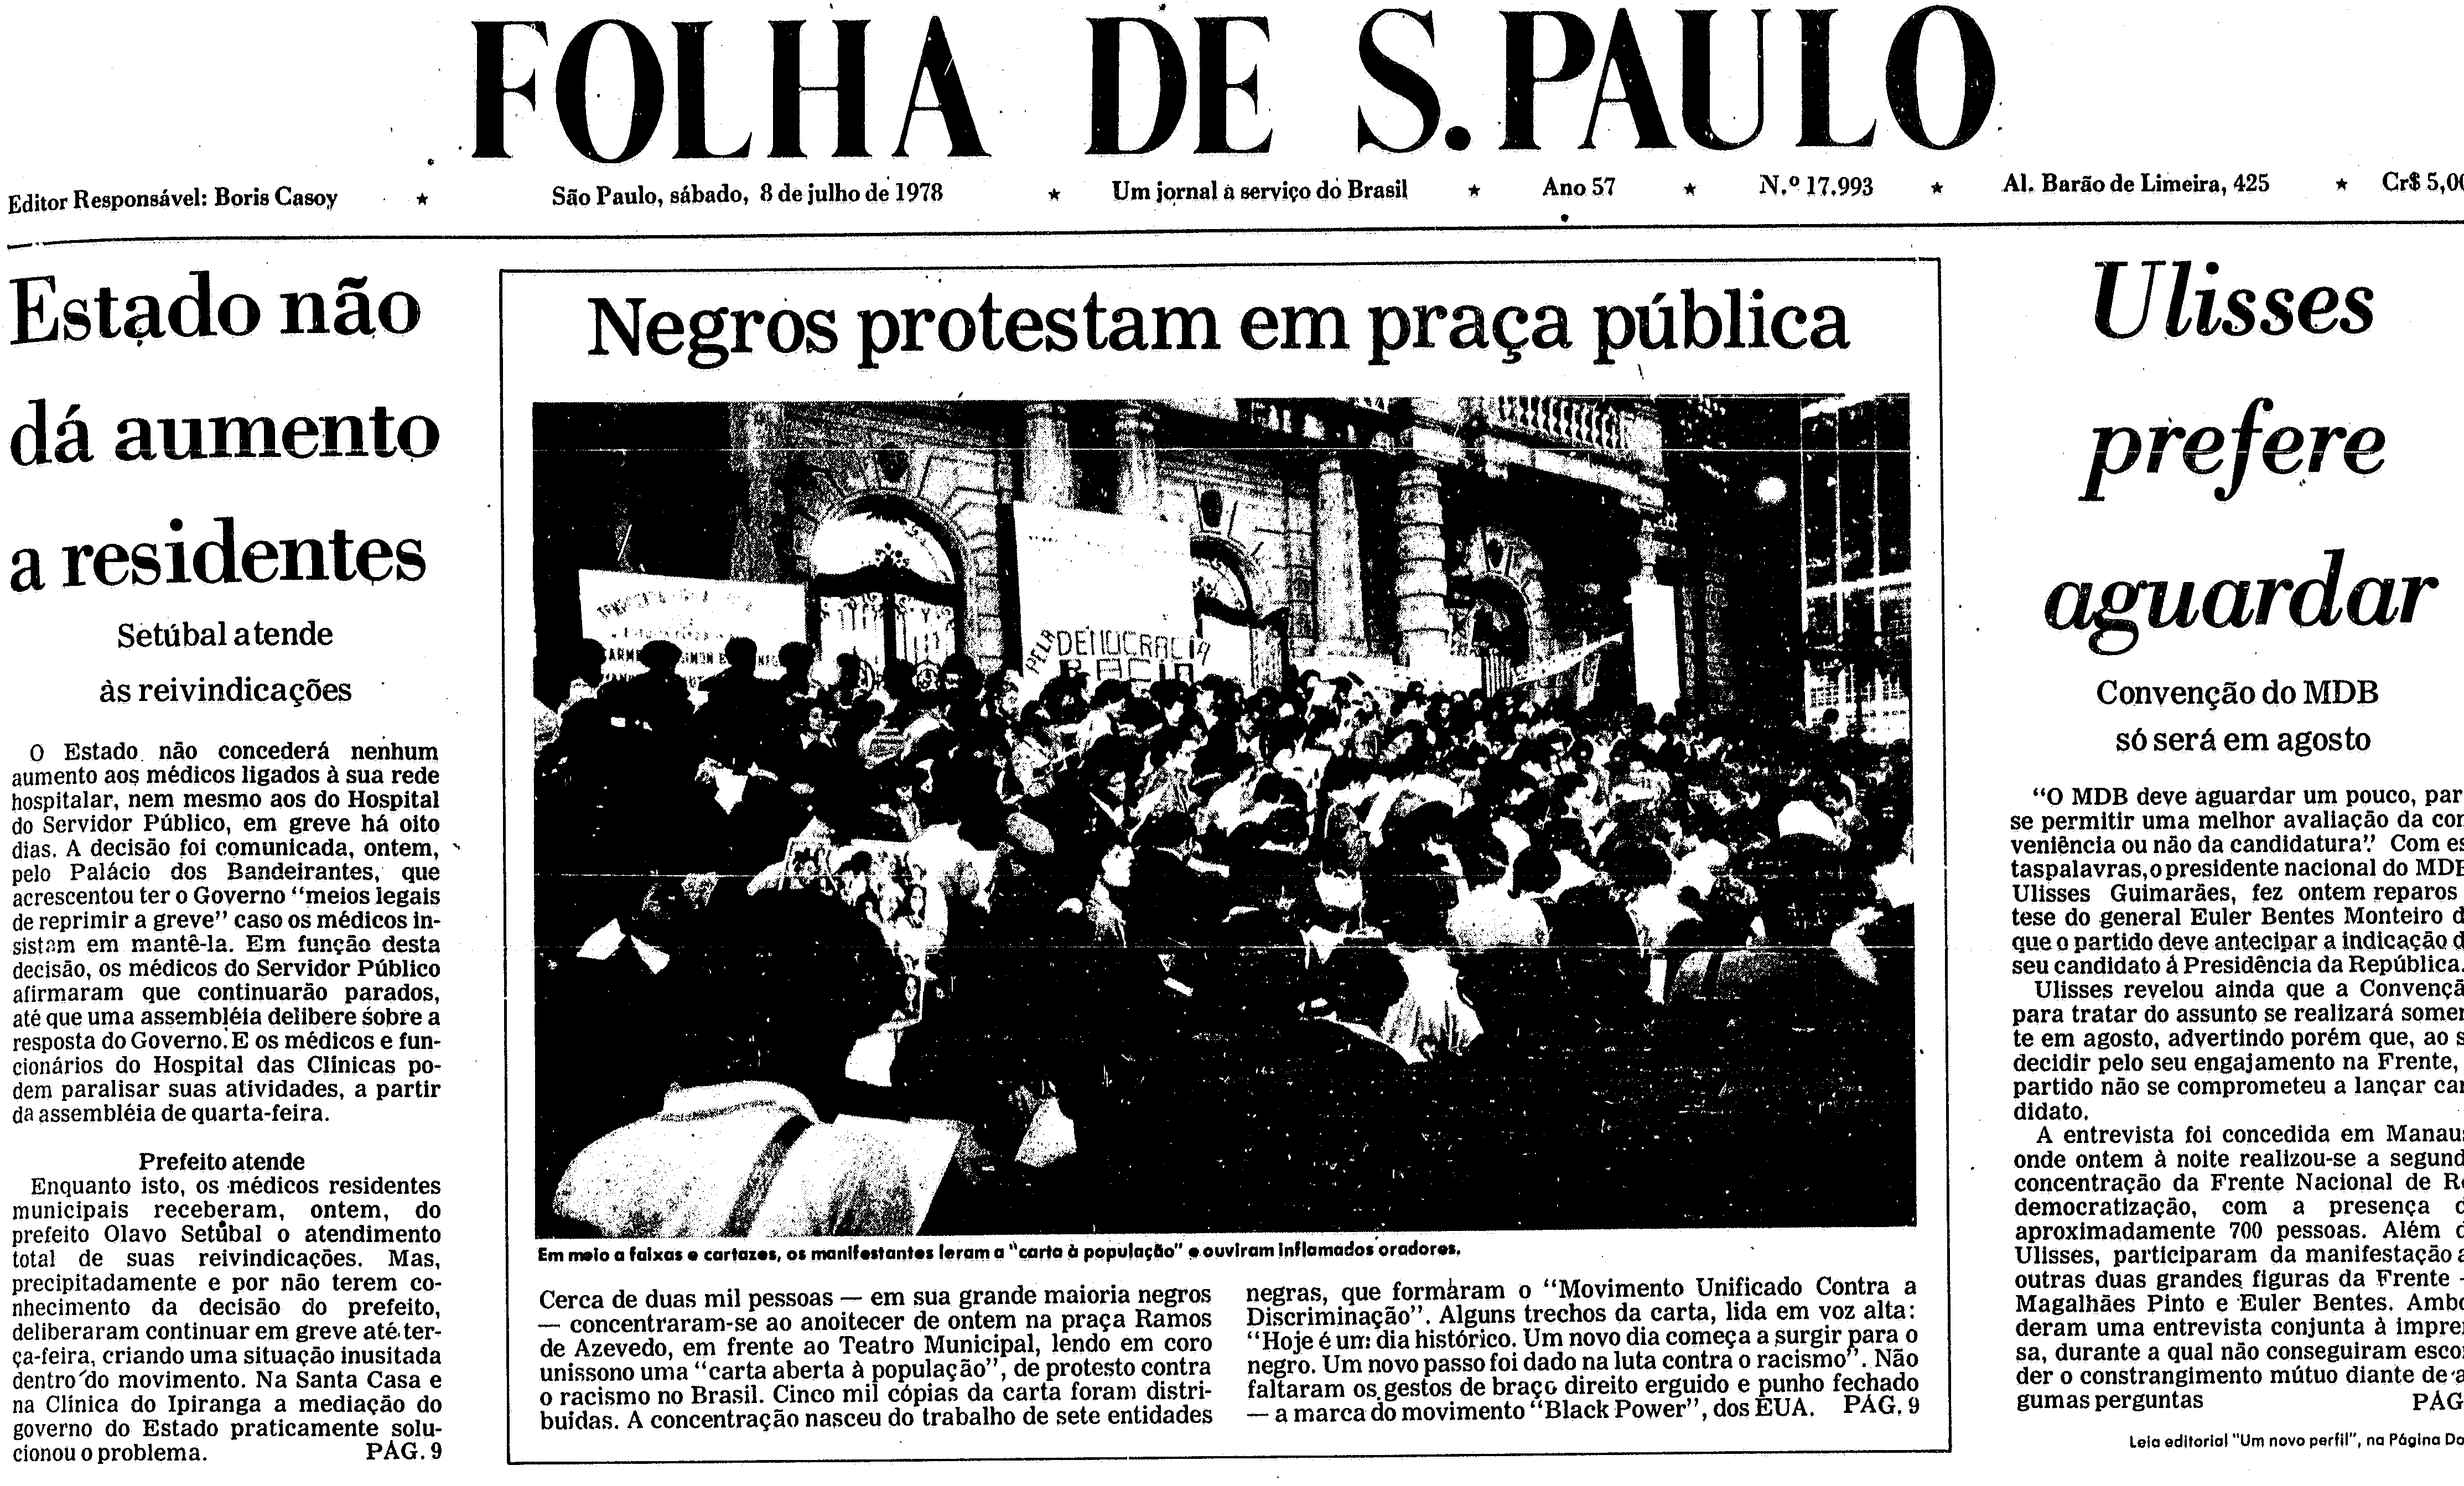 Capa do jornal 'Folha de S.Paulo' de 8 de julho de 1978 noticia o ato de lançamento do MNU.